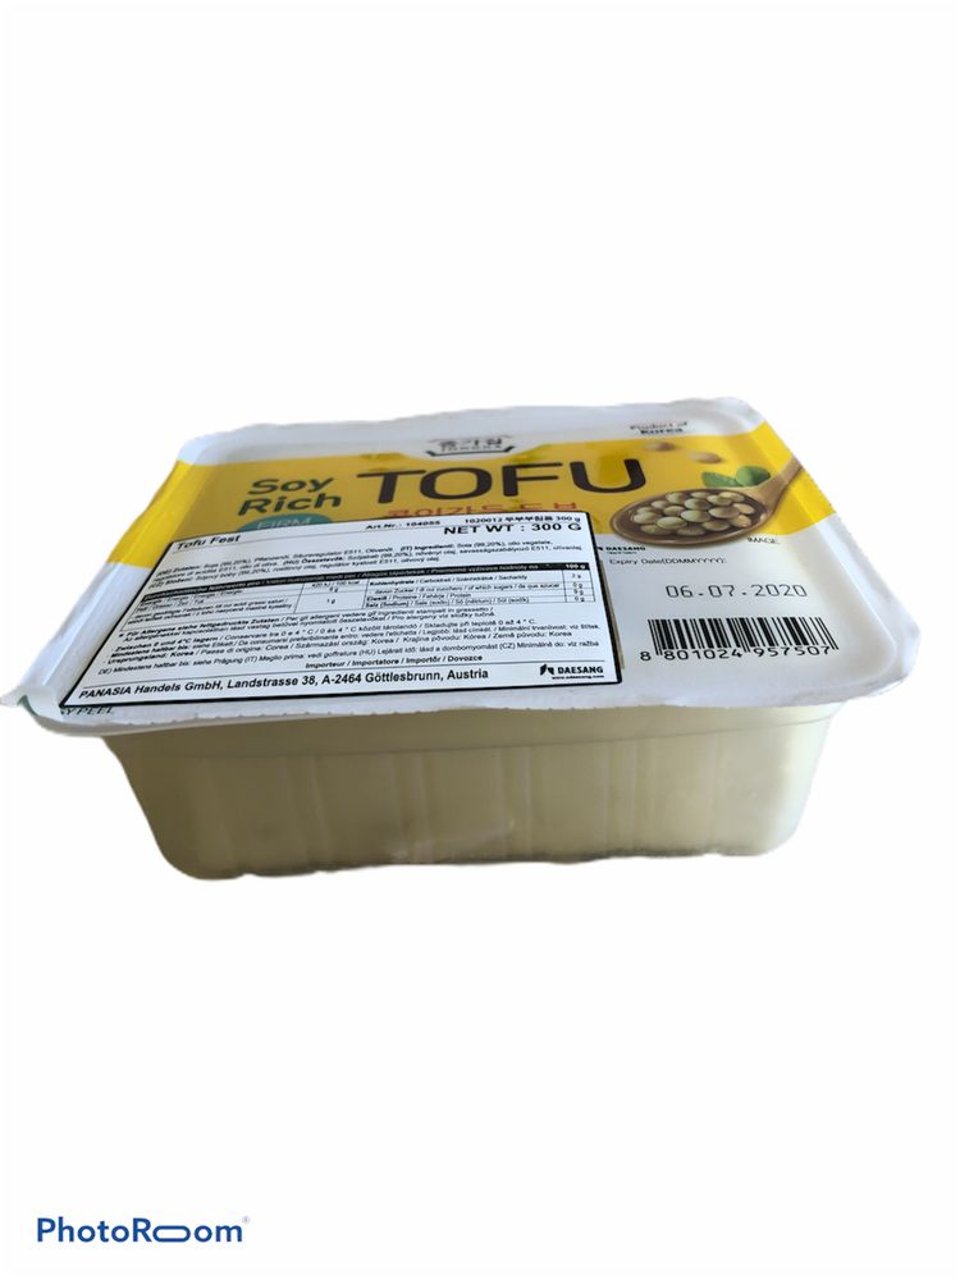 Soyrich Tofu 300G